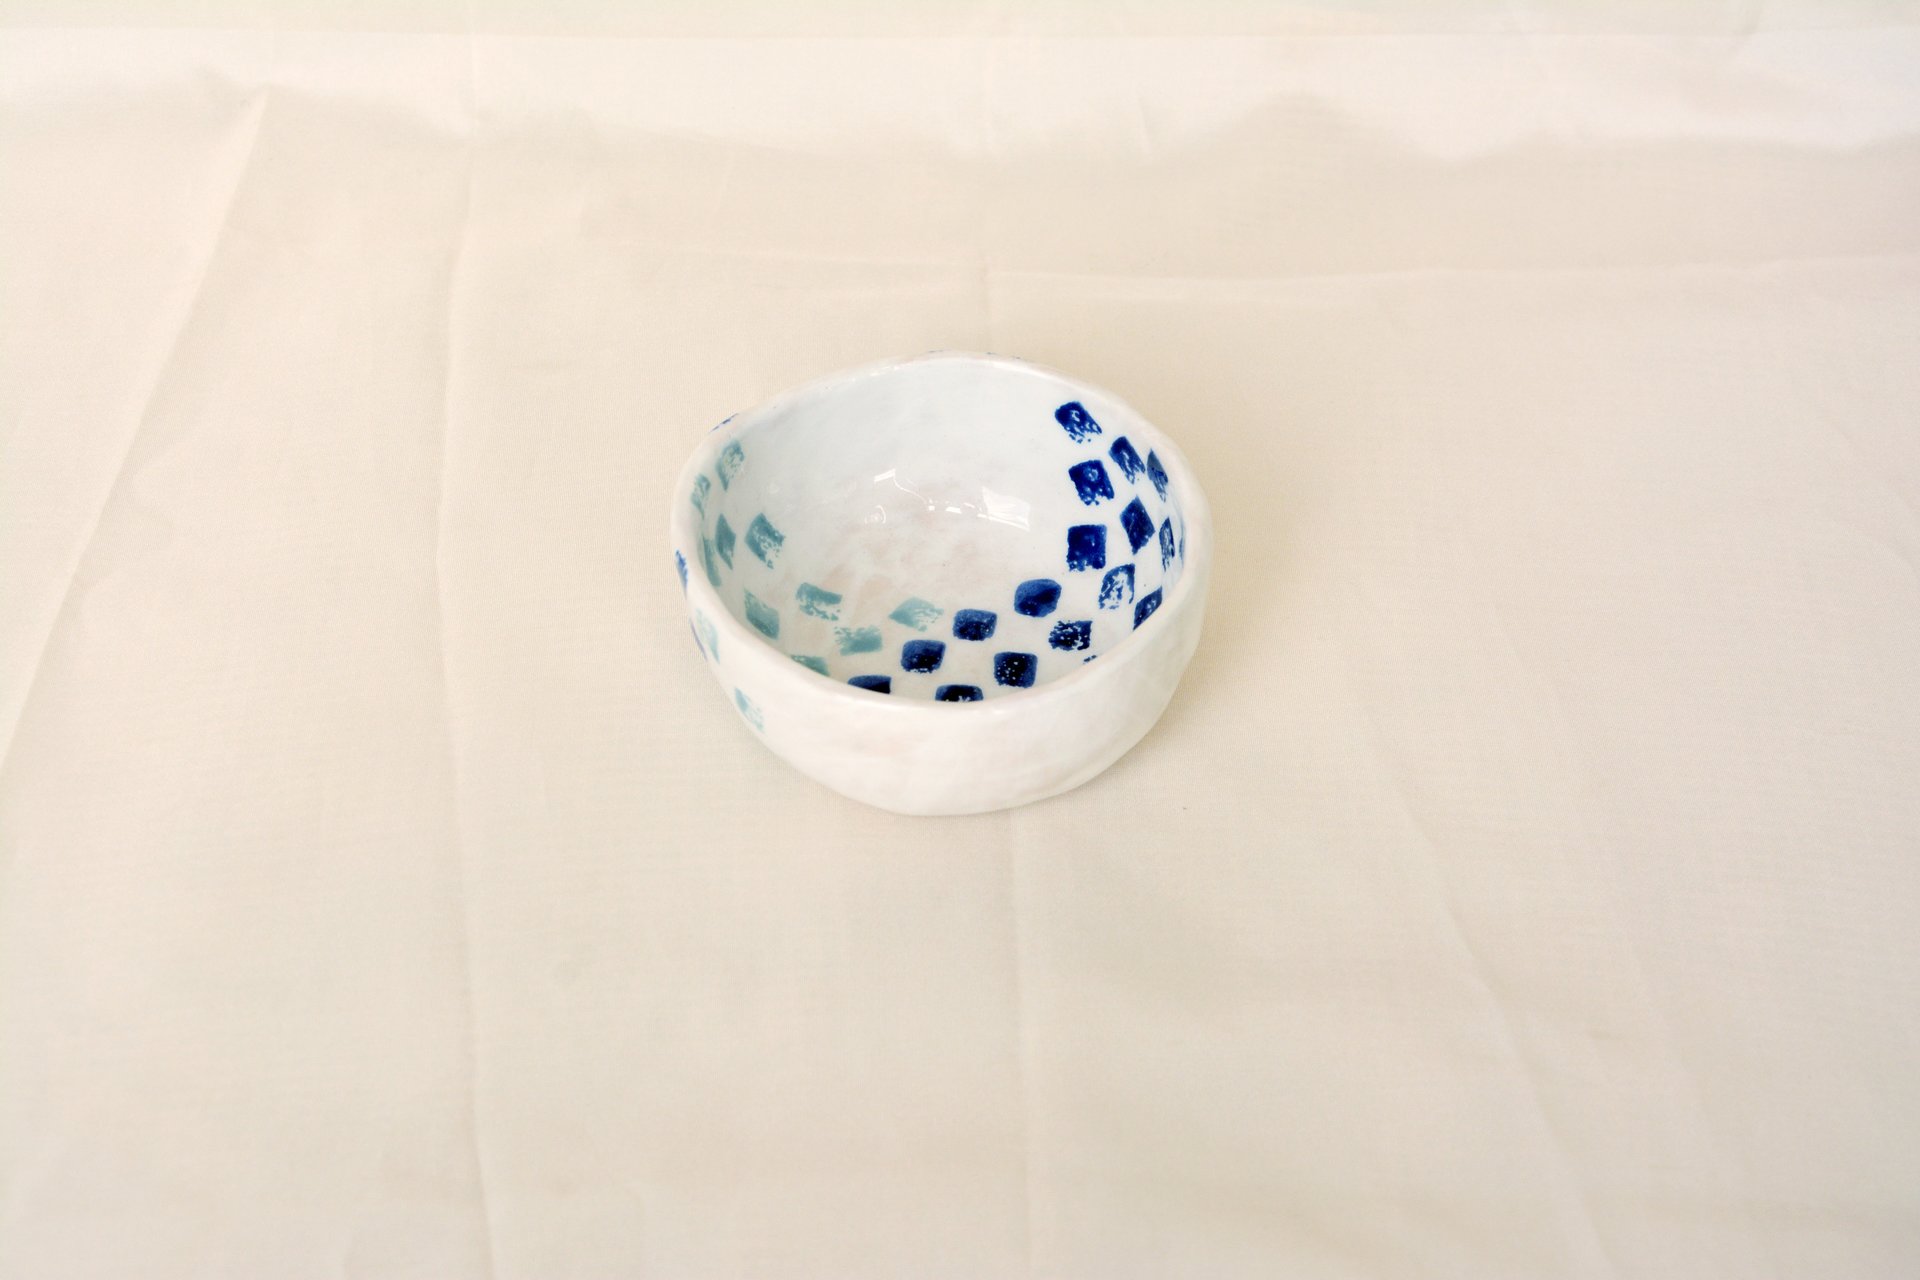 Синие квадратики на белом - Керамические тарелки, высота - 4 см, диаметр - 9.5 см, фото 3 из 4.